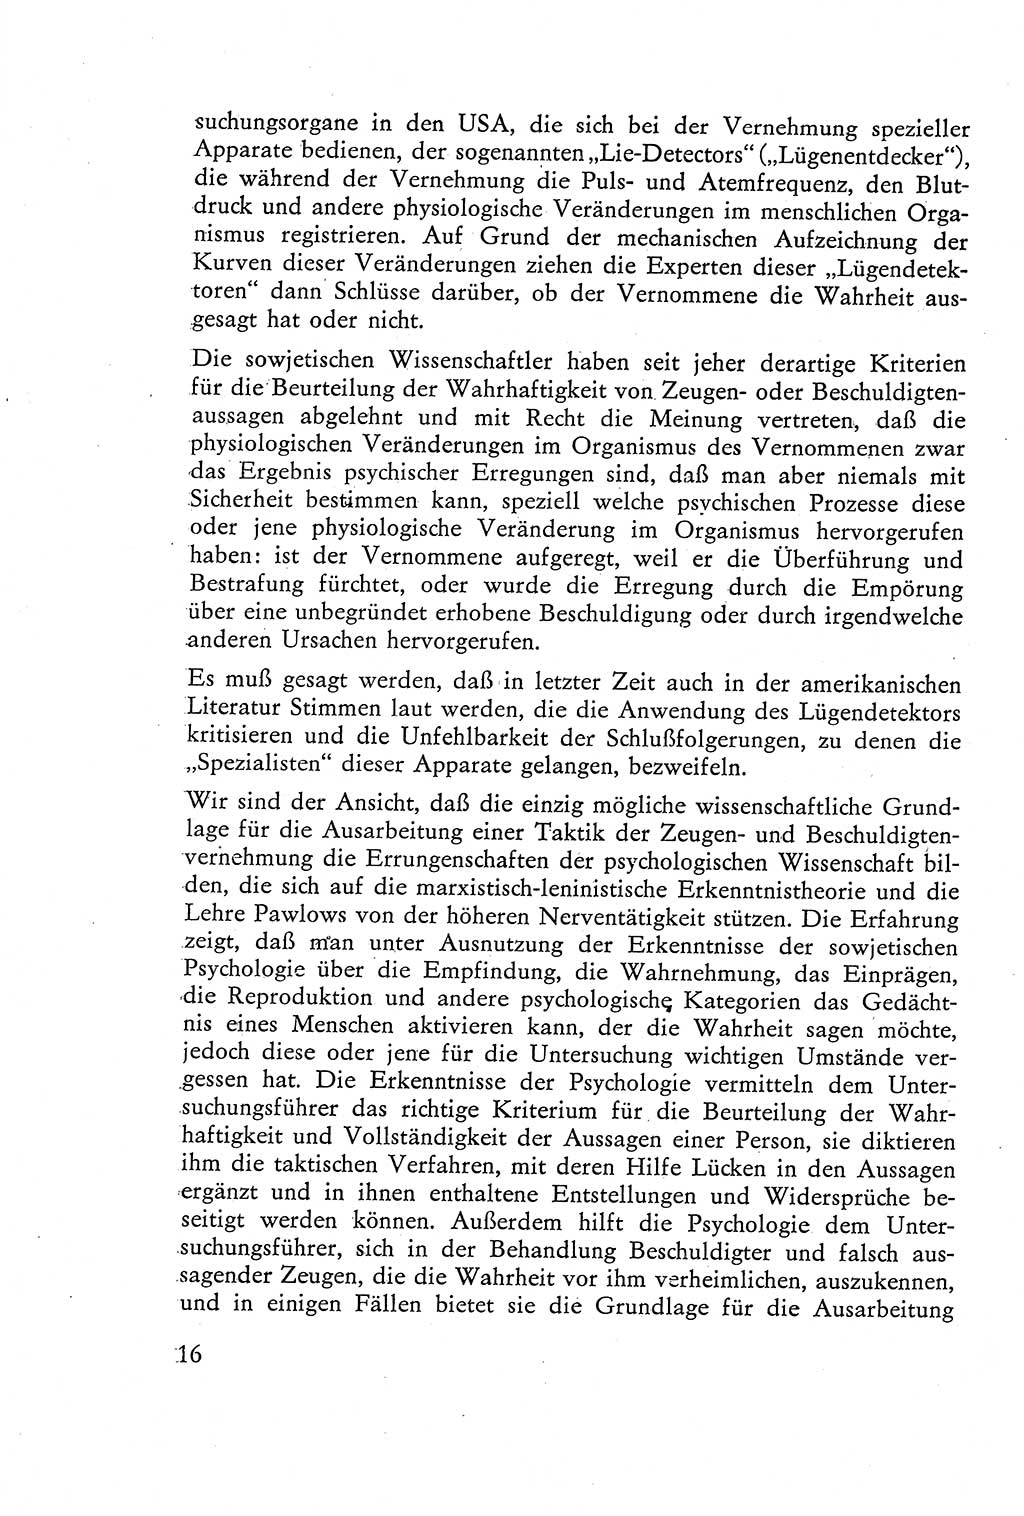 Die Vernehmung [Deutsche Demokratische Republik (DDR)] 1960, Seite 16 (Vern. DDR 1960, S. 16)